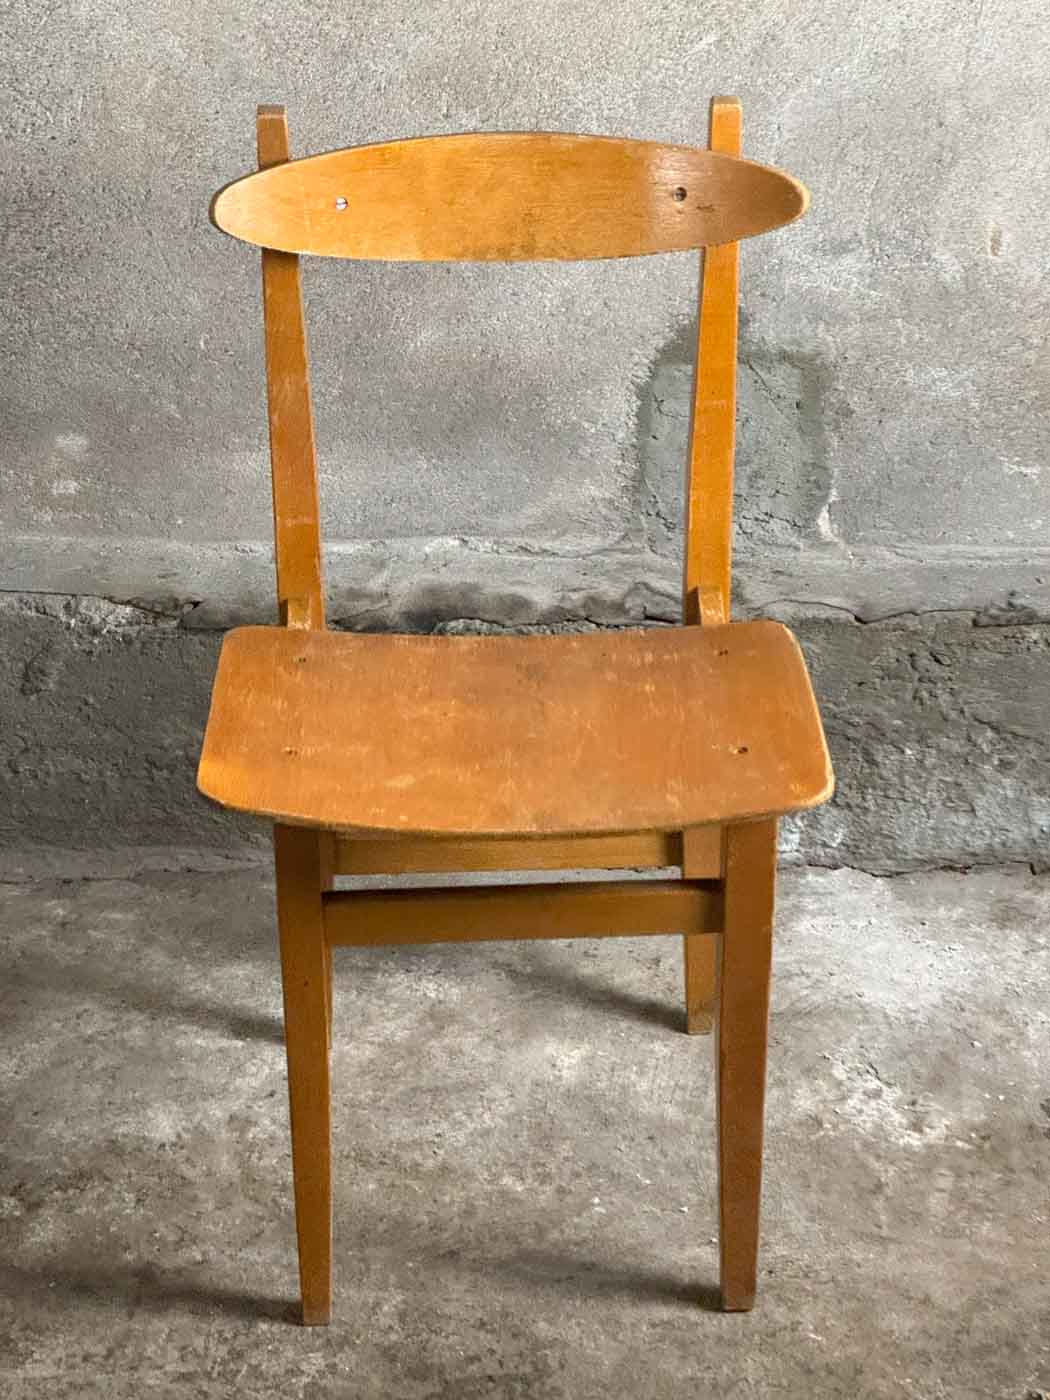 Detal Krzesła Stolarskiego 200-102 – Frontalny Widok